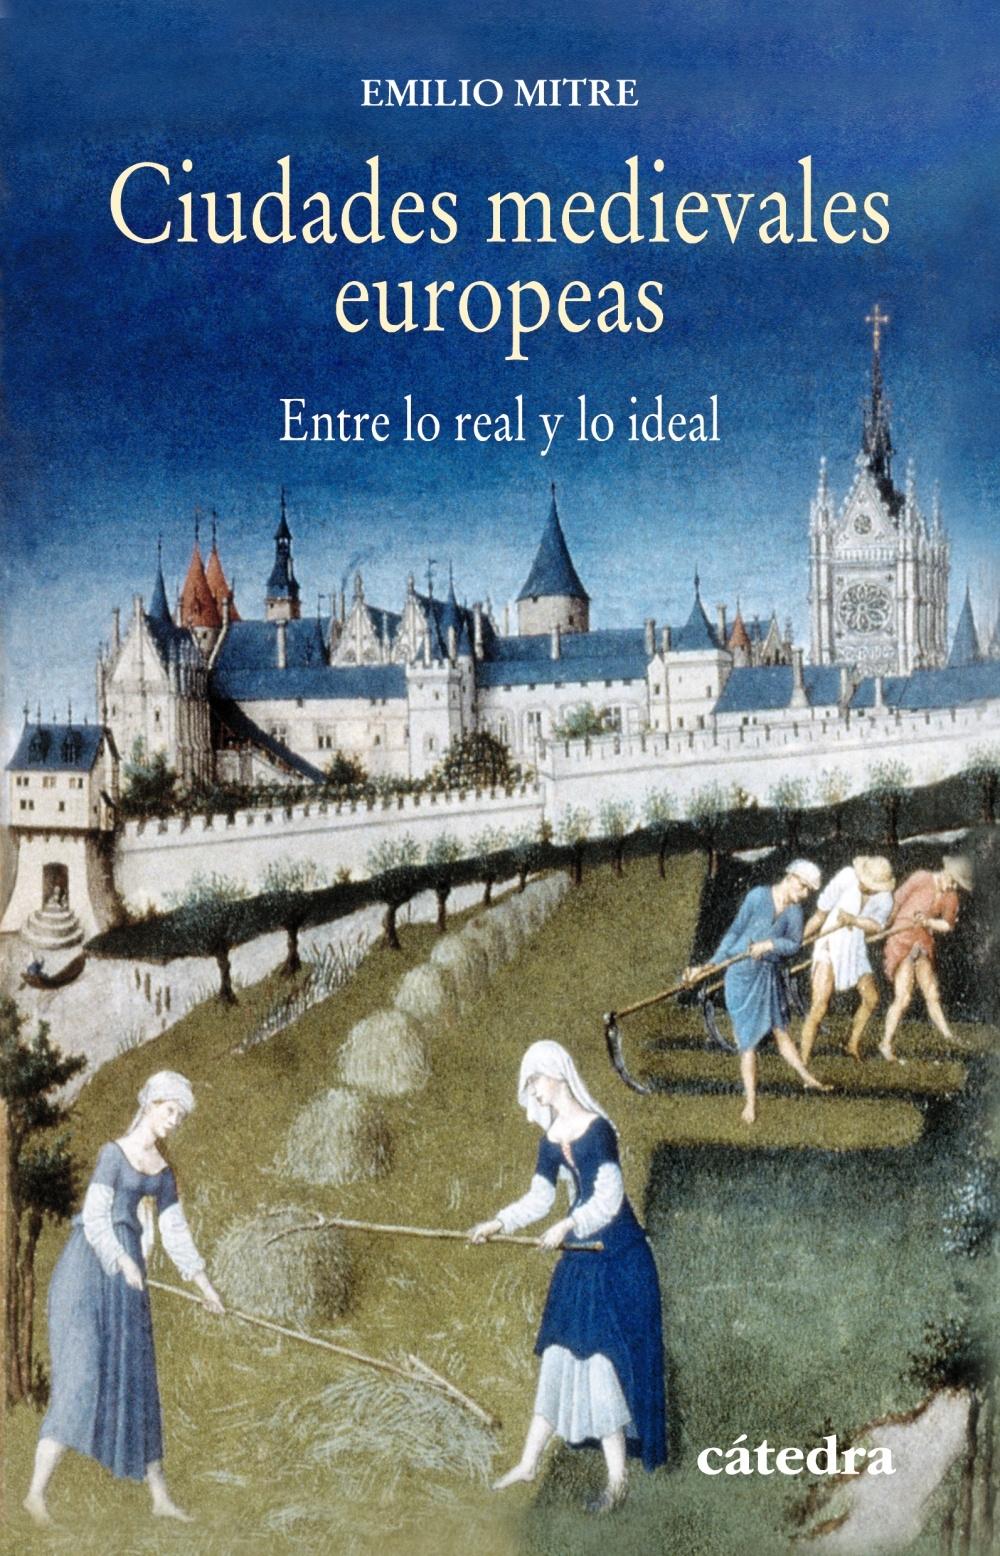 Ciudades medievales europeas "Entre lo real y lo ideal"